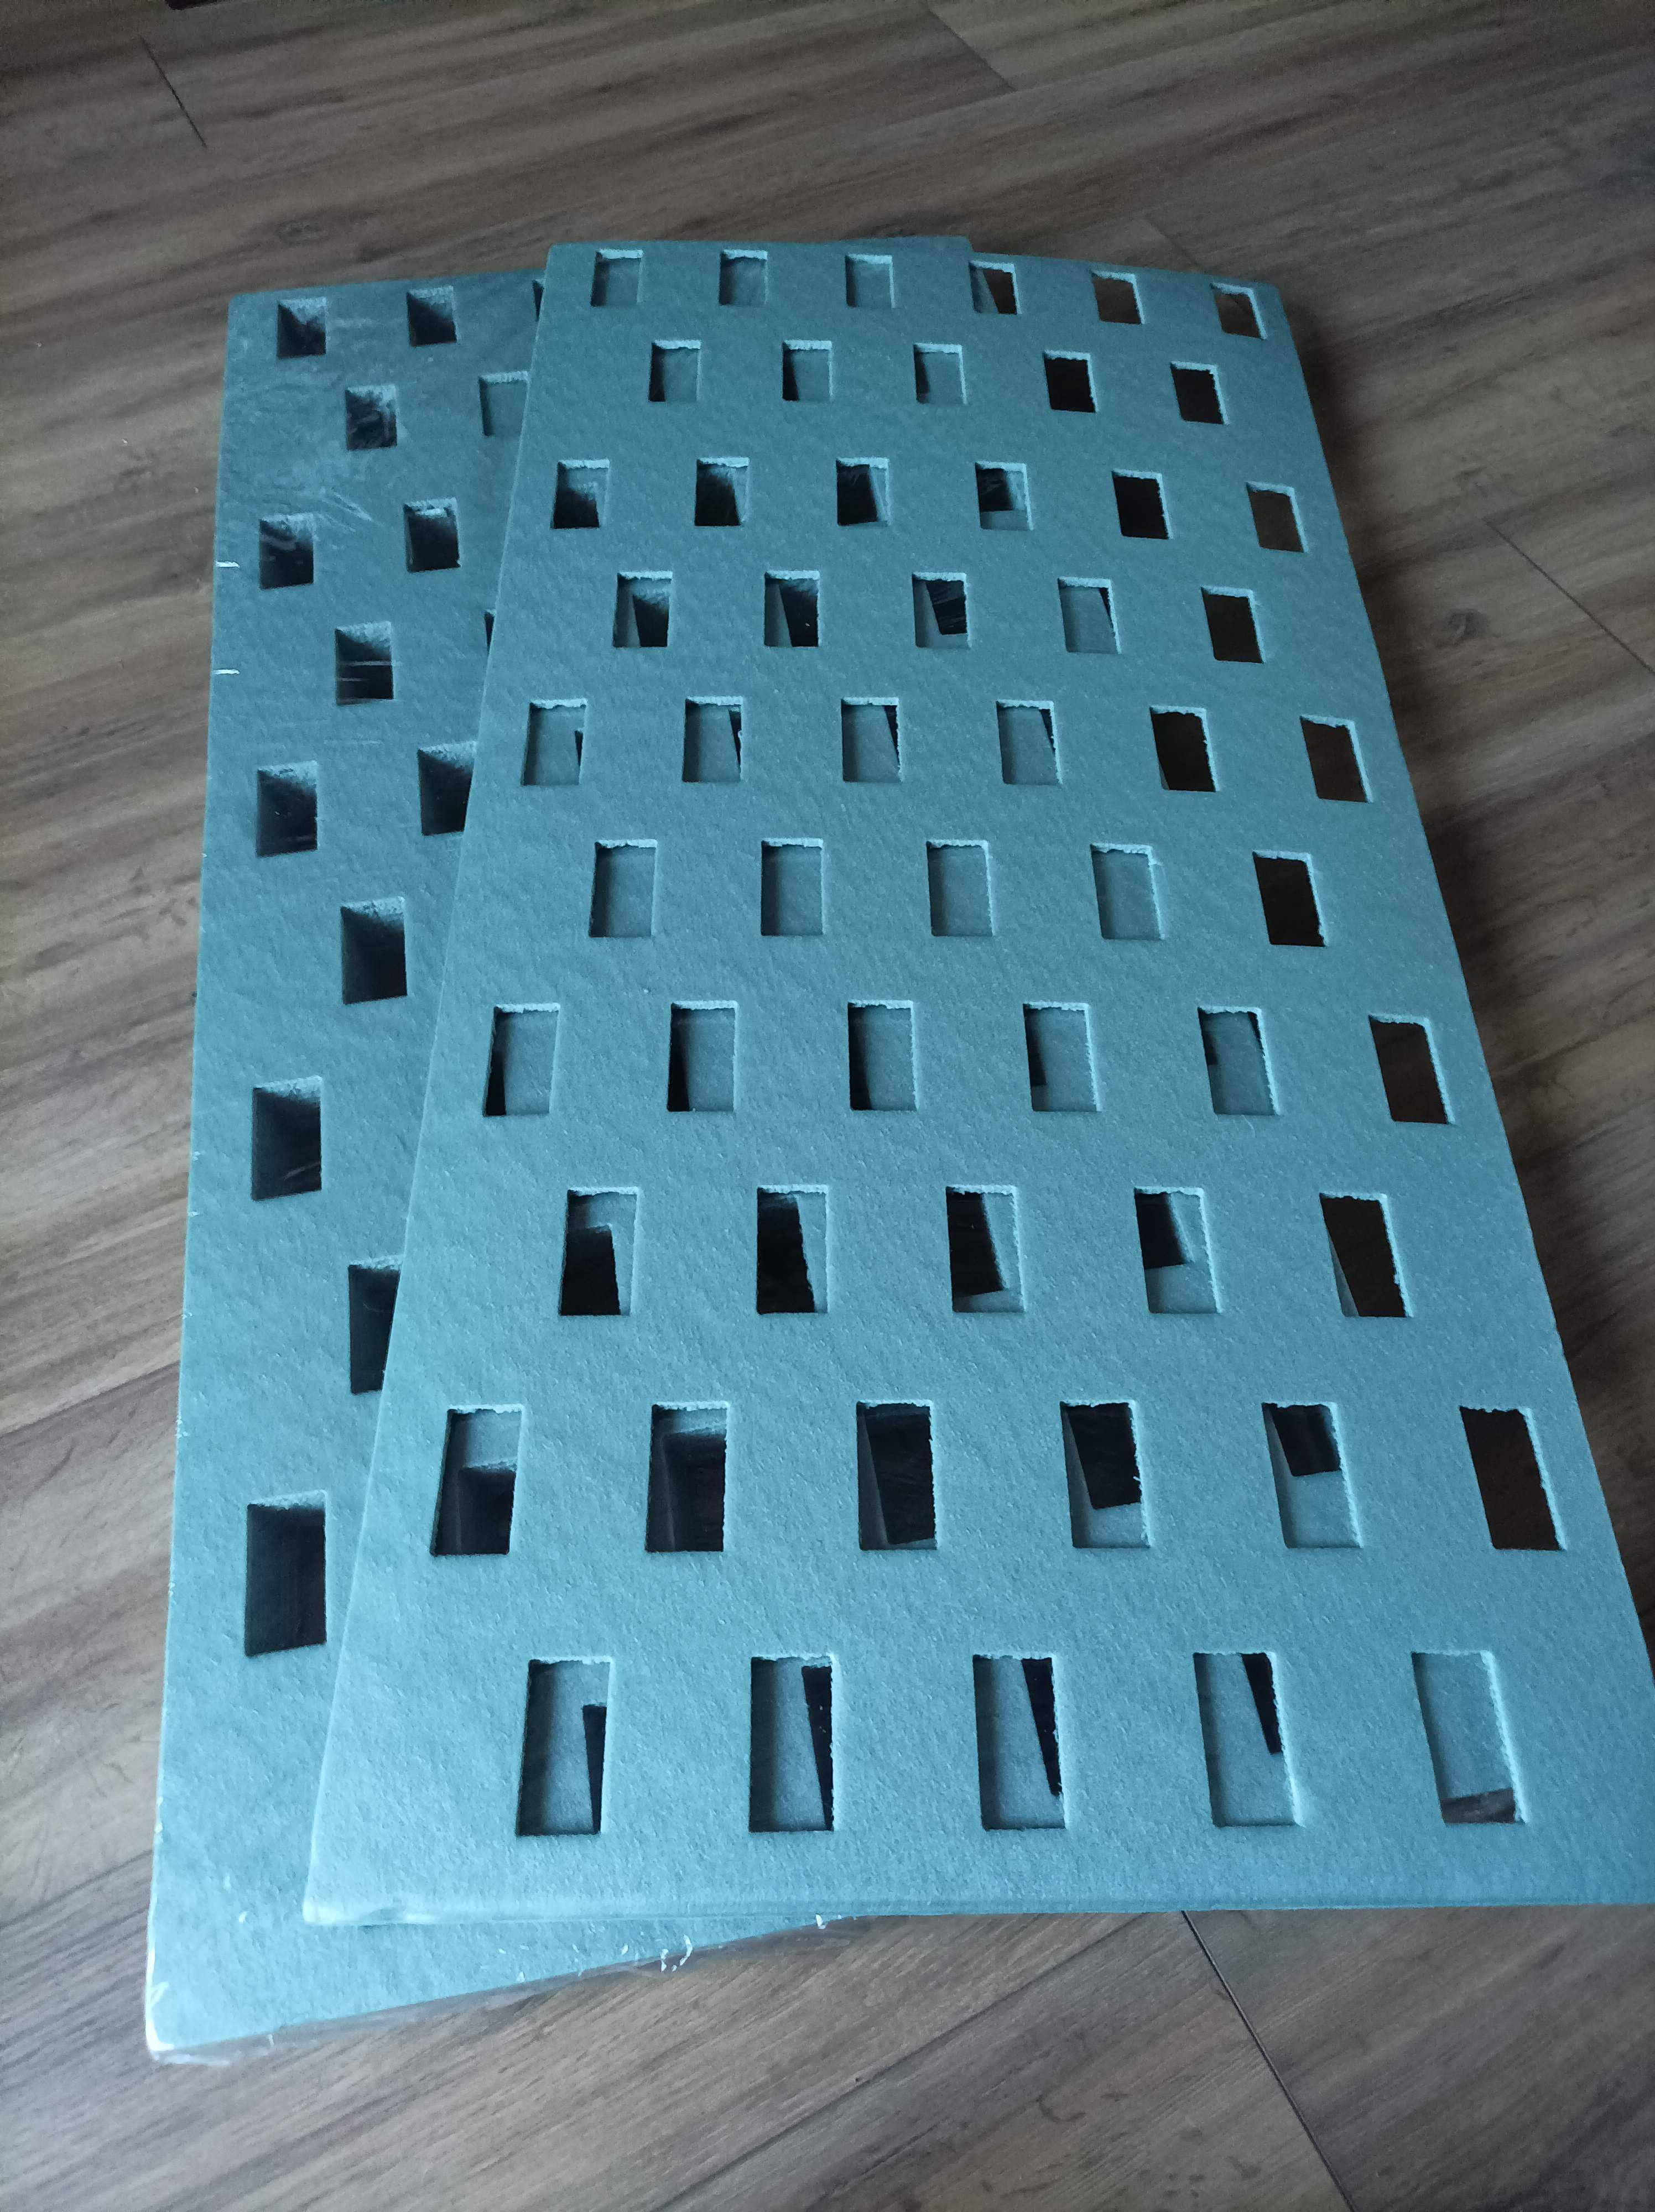 Podkład pod panele - ogrzewanie podłogowe - 5mm  50x100cm - 5,5m2